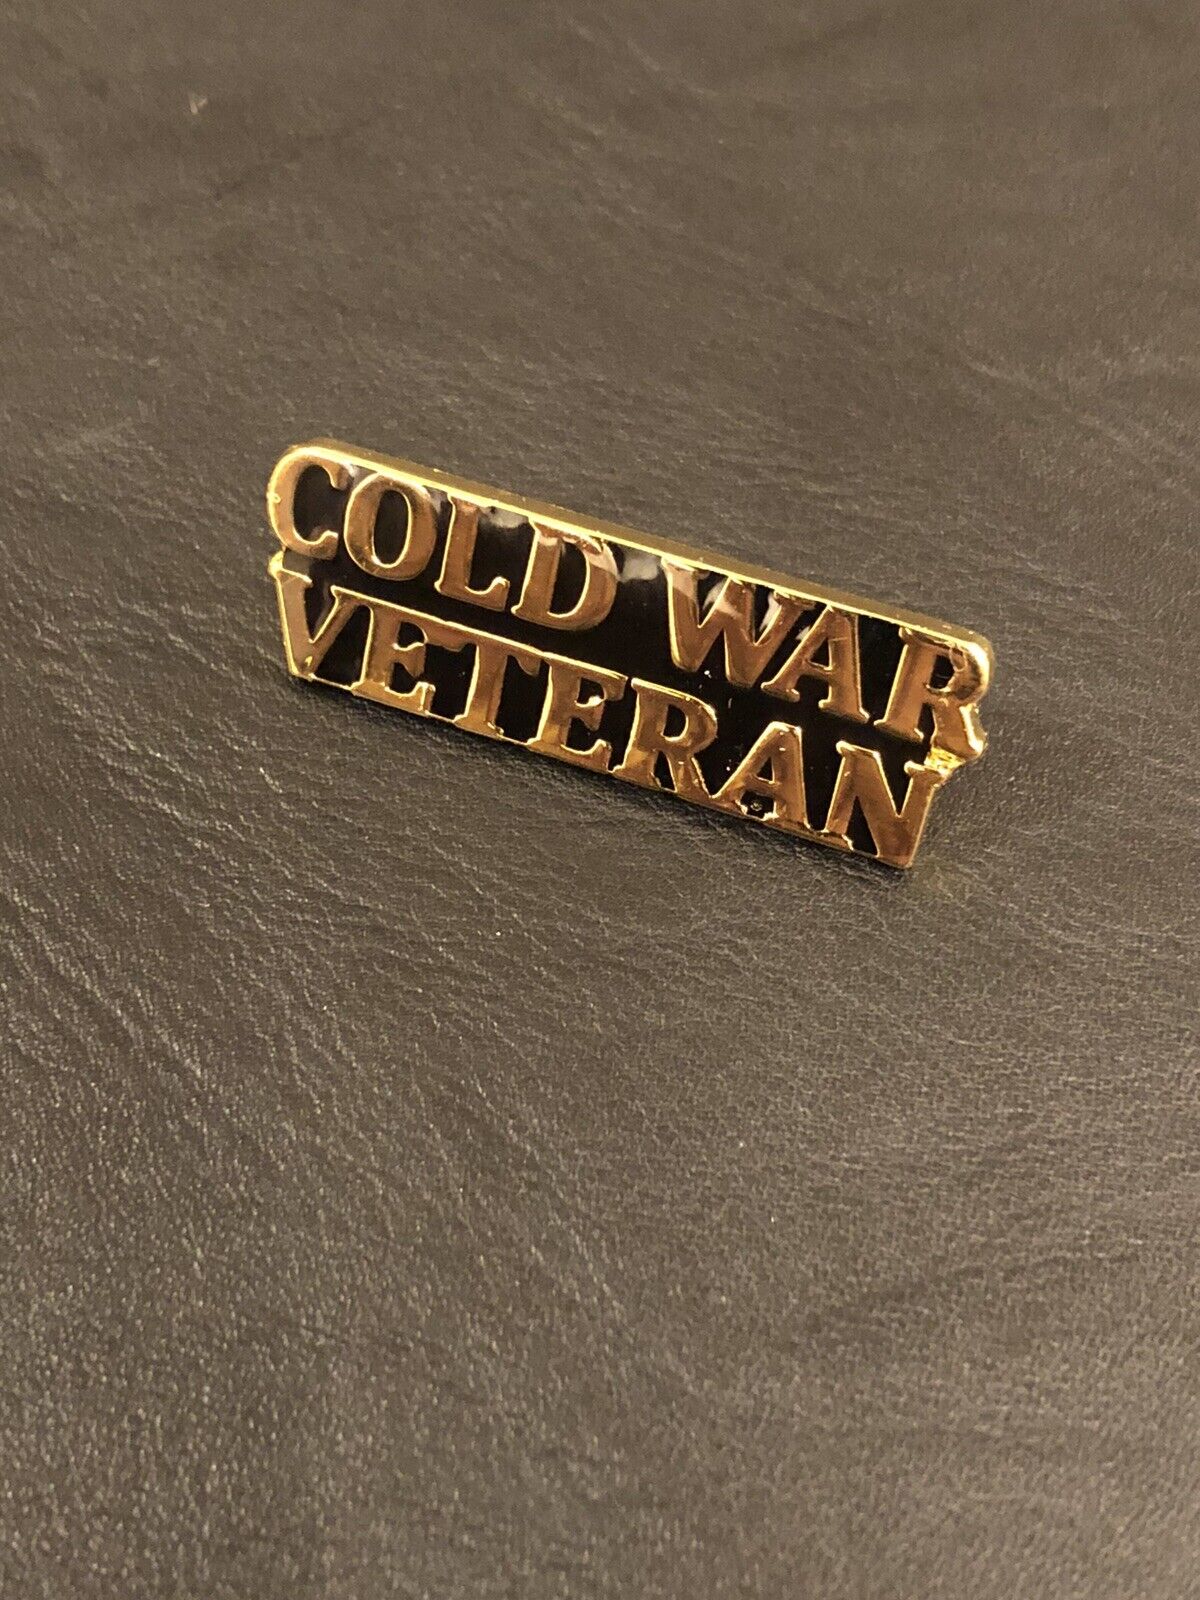 Cold War Veteran Script pin Vietnam Veteran Hat pin or lapel Pin, Korean Vet Pin